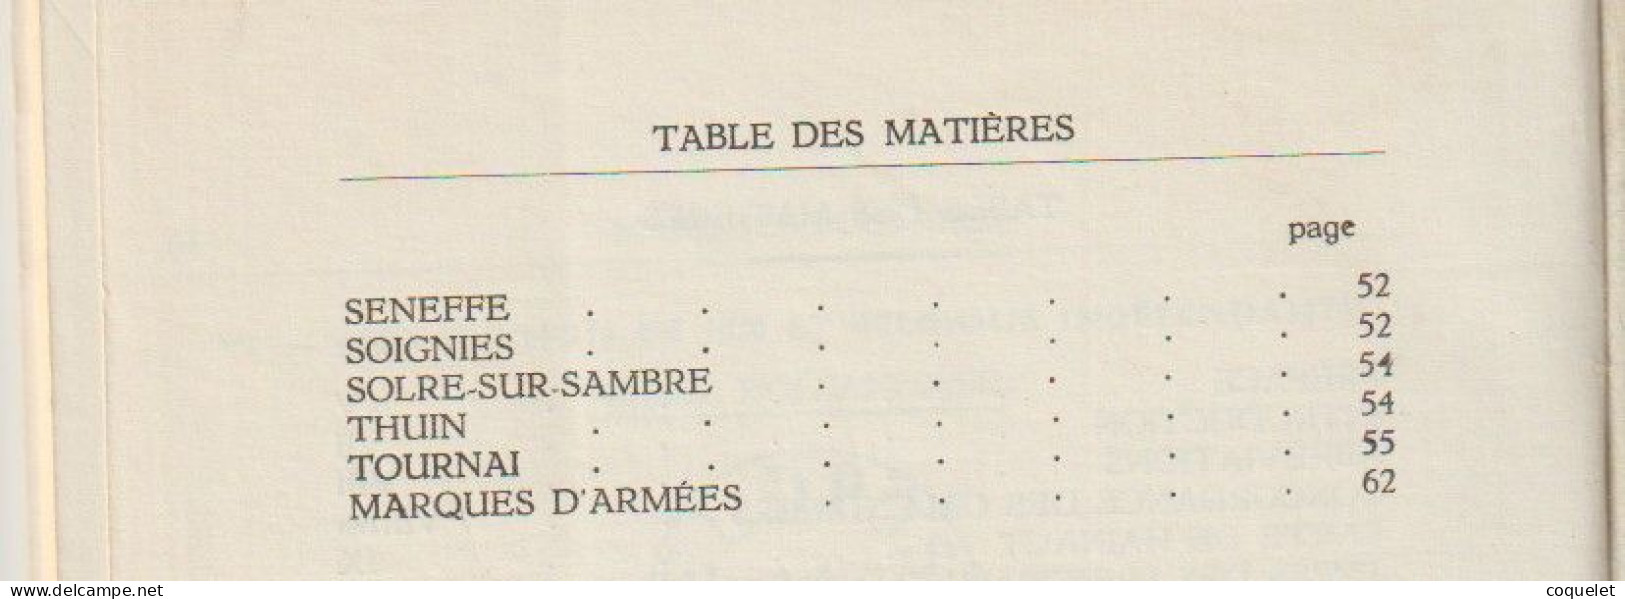 Catalogue Des Marques Postales Du Hainaut De 1648 à 1849 EXdépartement De JEMAPPES  Par Lucien HERLANT Livre De 70 Pages - Oblitérations